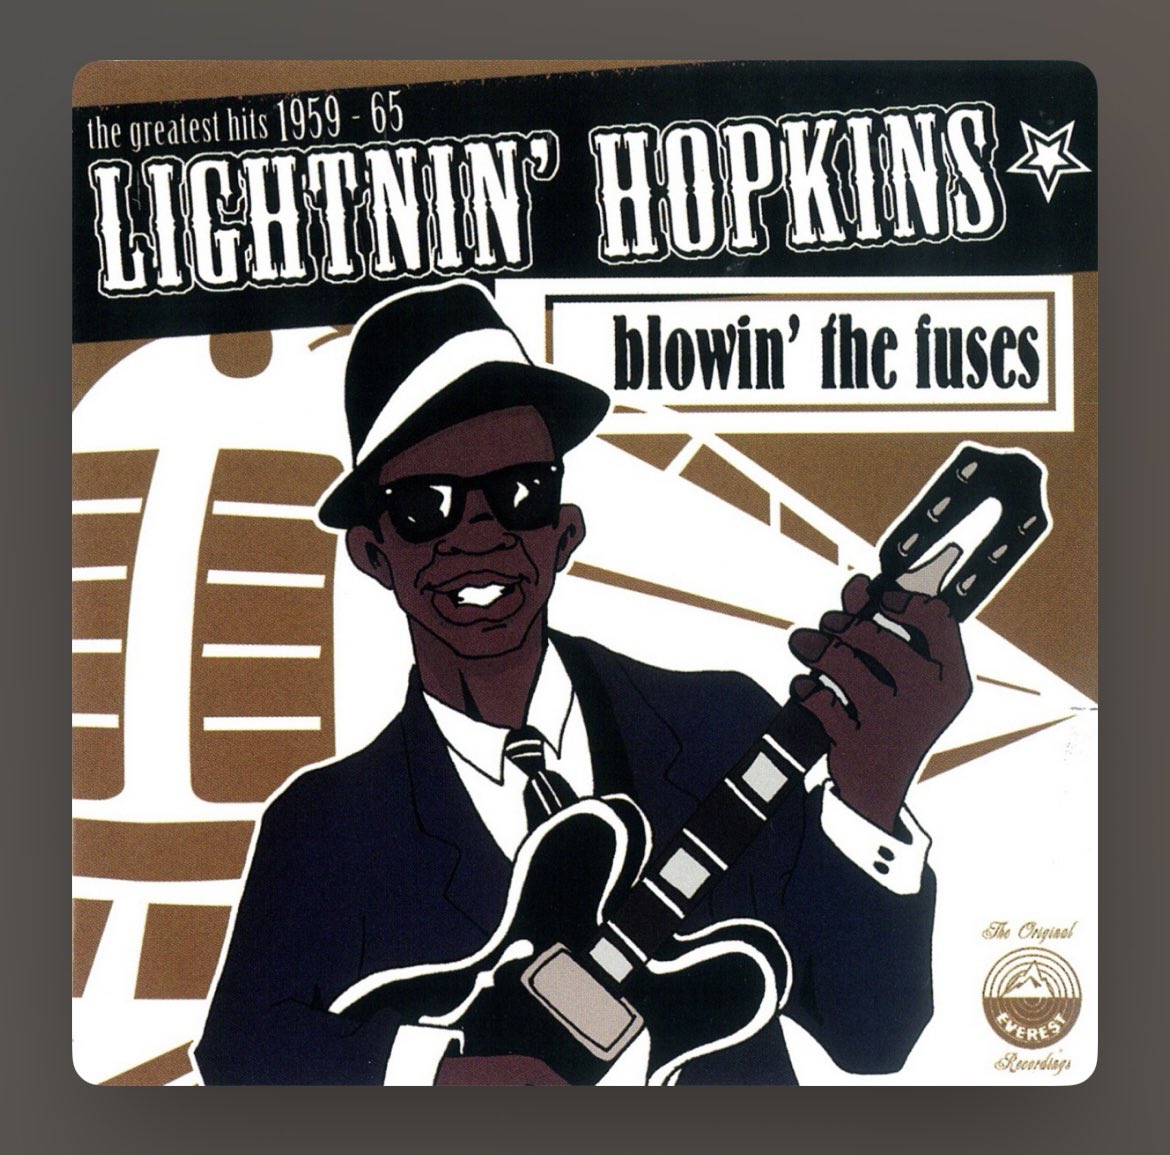 🎶#JBsNowPlaying🎶

Santa Fe - Lightnin' Hopkins

#bluesmusic #lightninhopkins #nowplaying